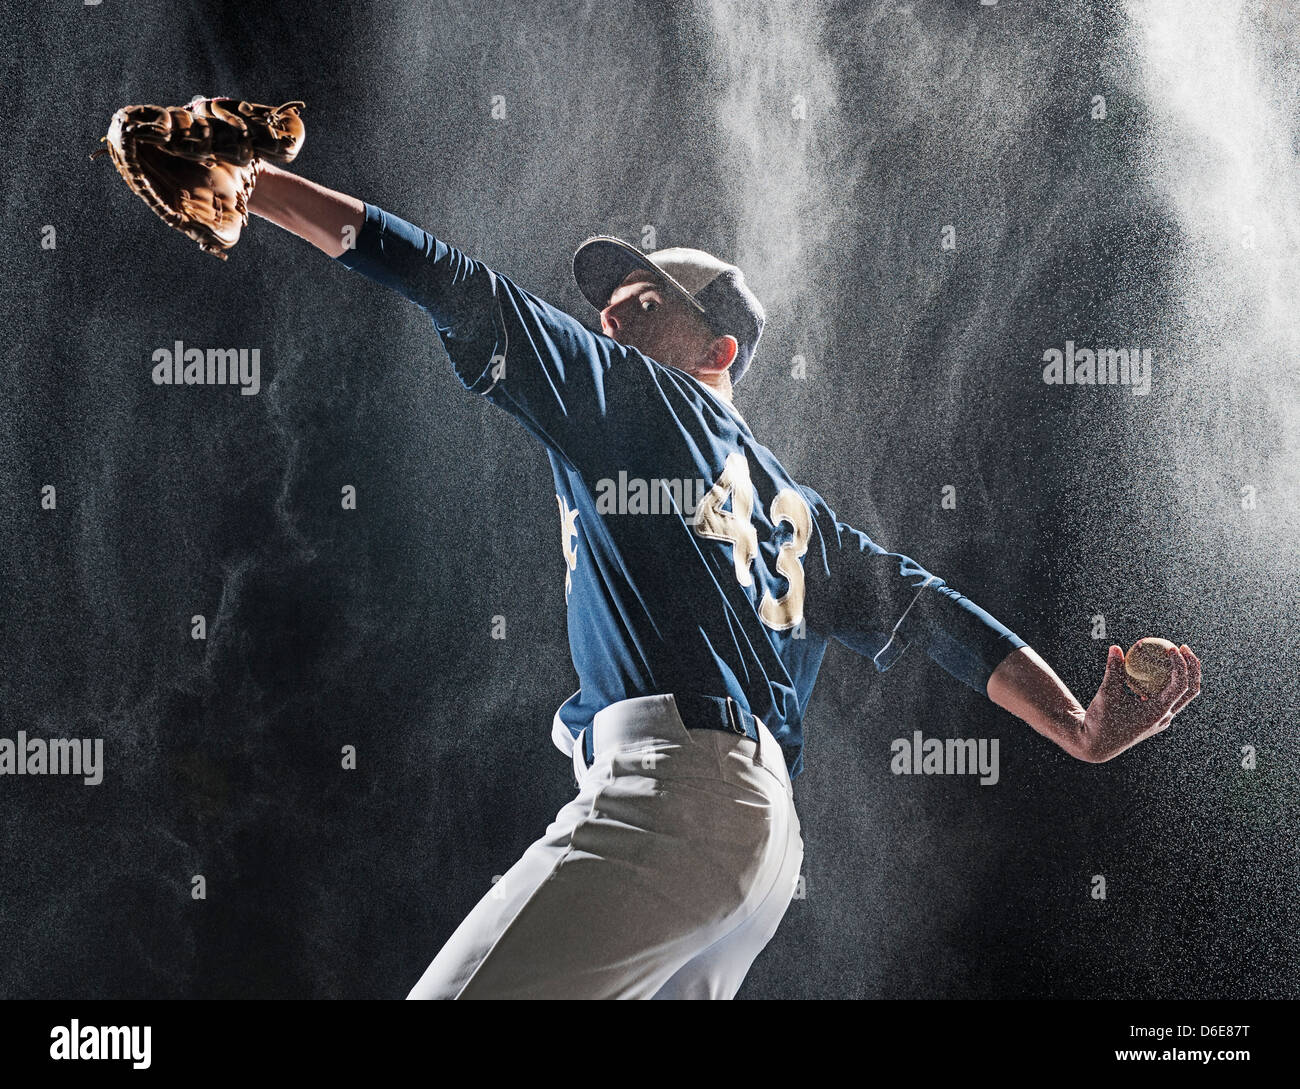 Kaukasische Baseballspieler pitching im Regen Stockfoto